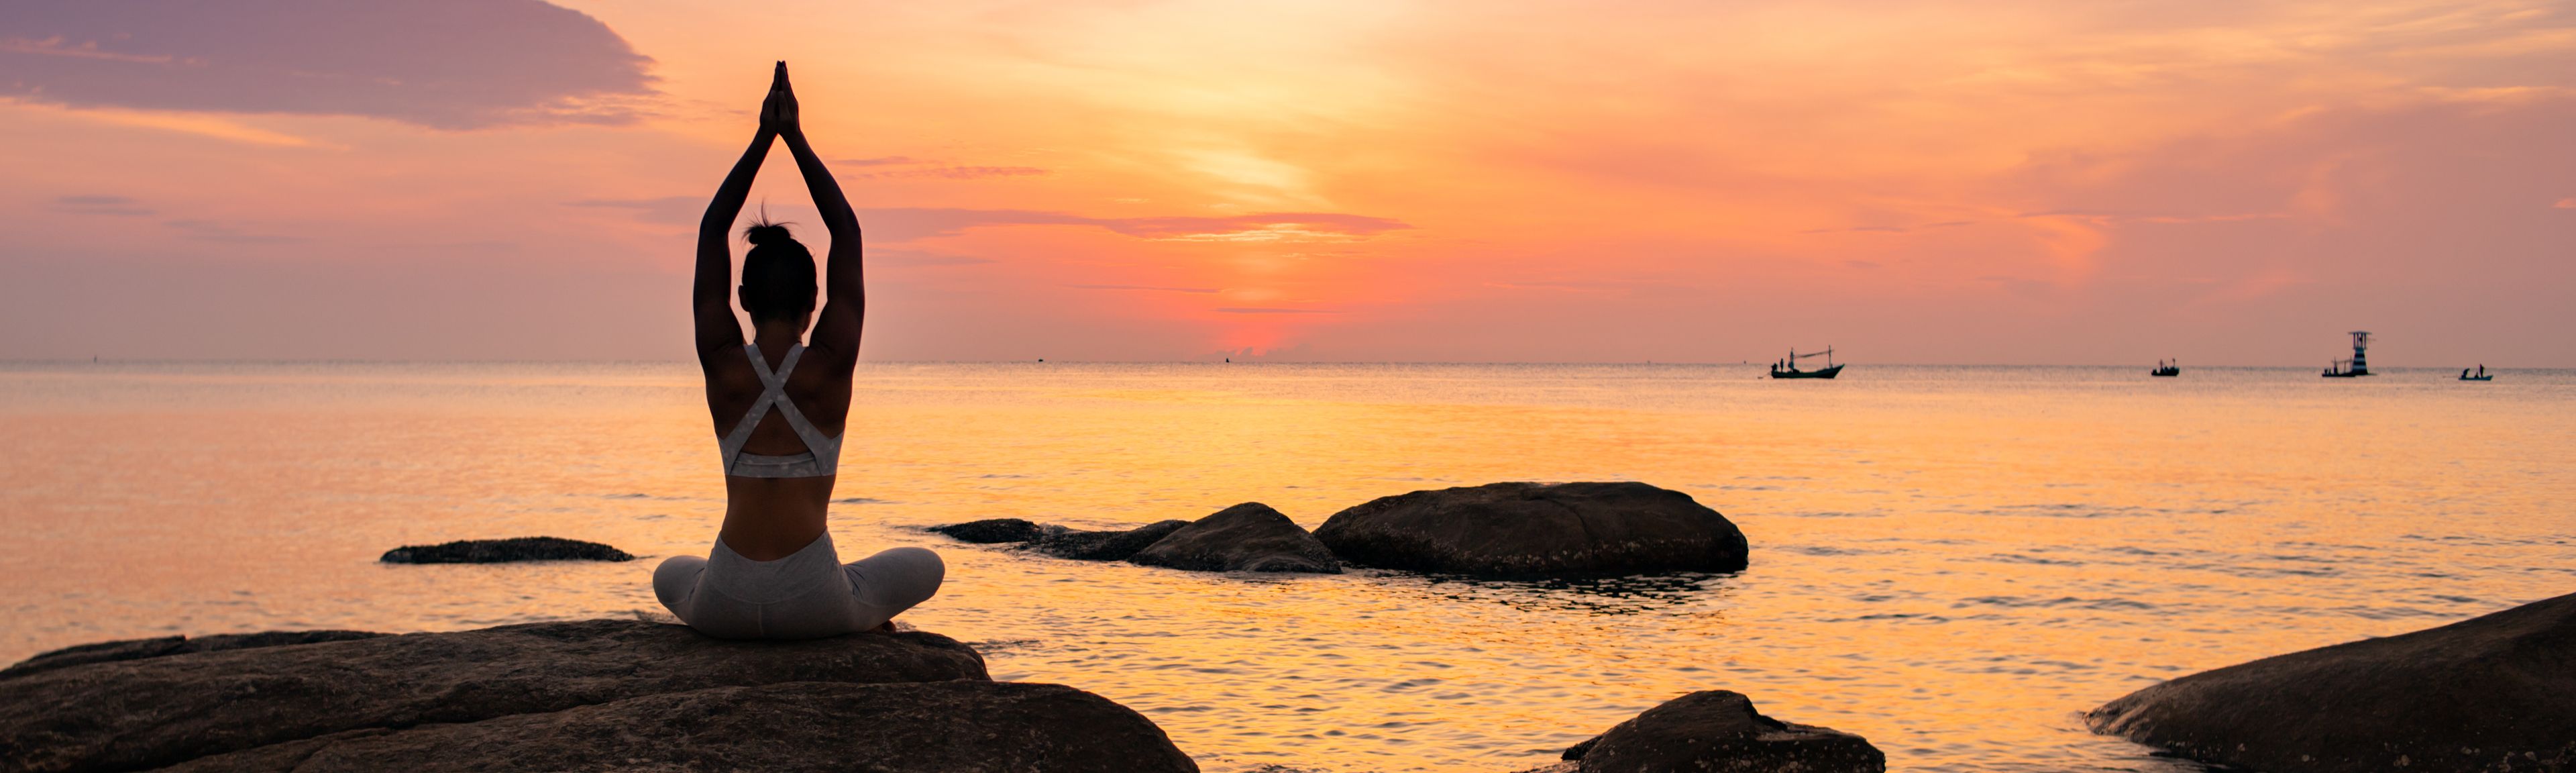 Frau meditiert auf Felsen am Meer